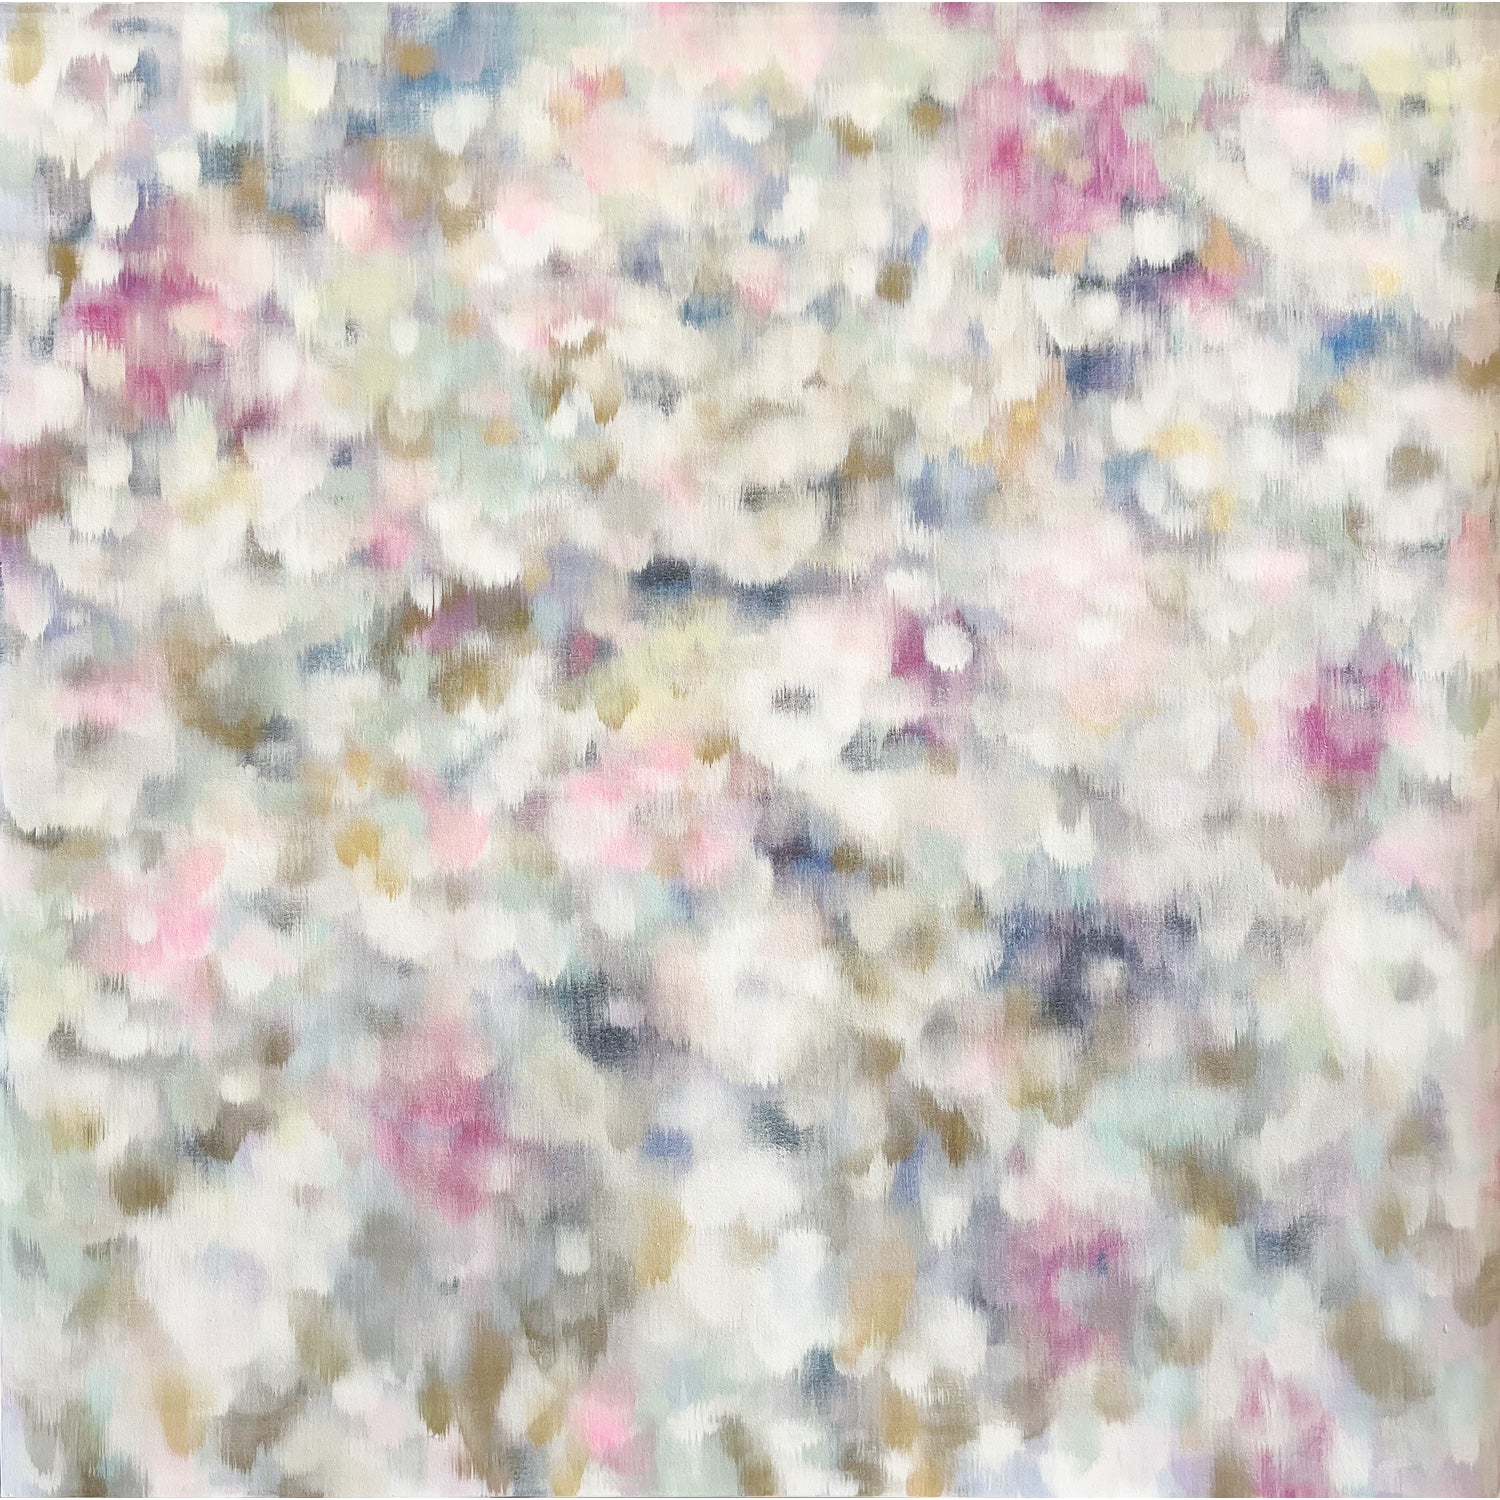 Amey Lai - Floral Love, 40" x 40"